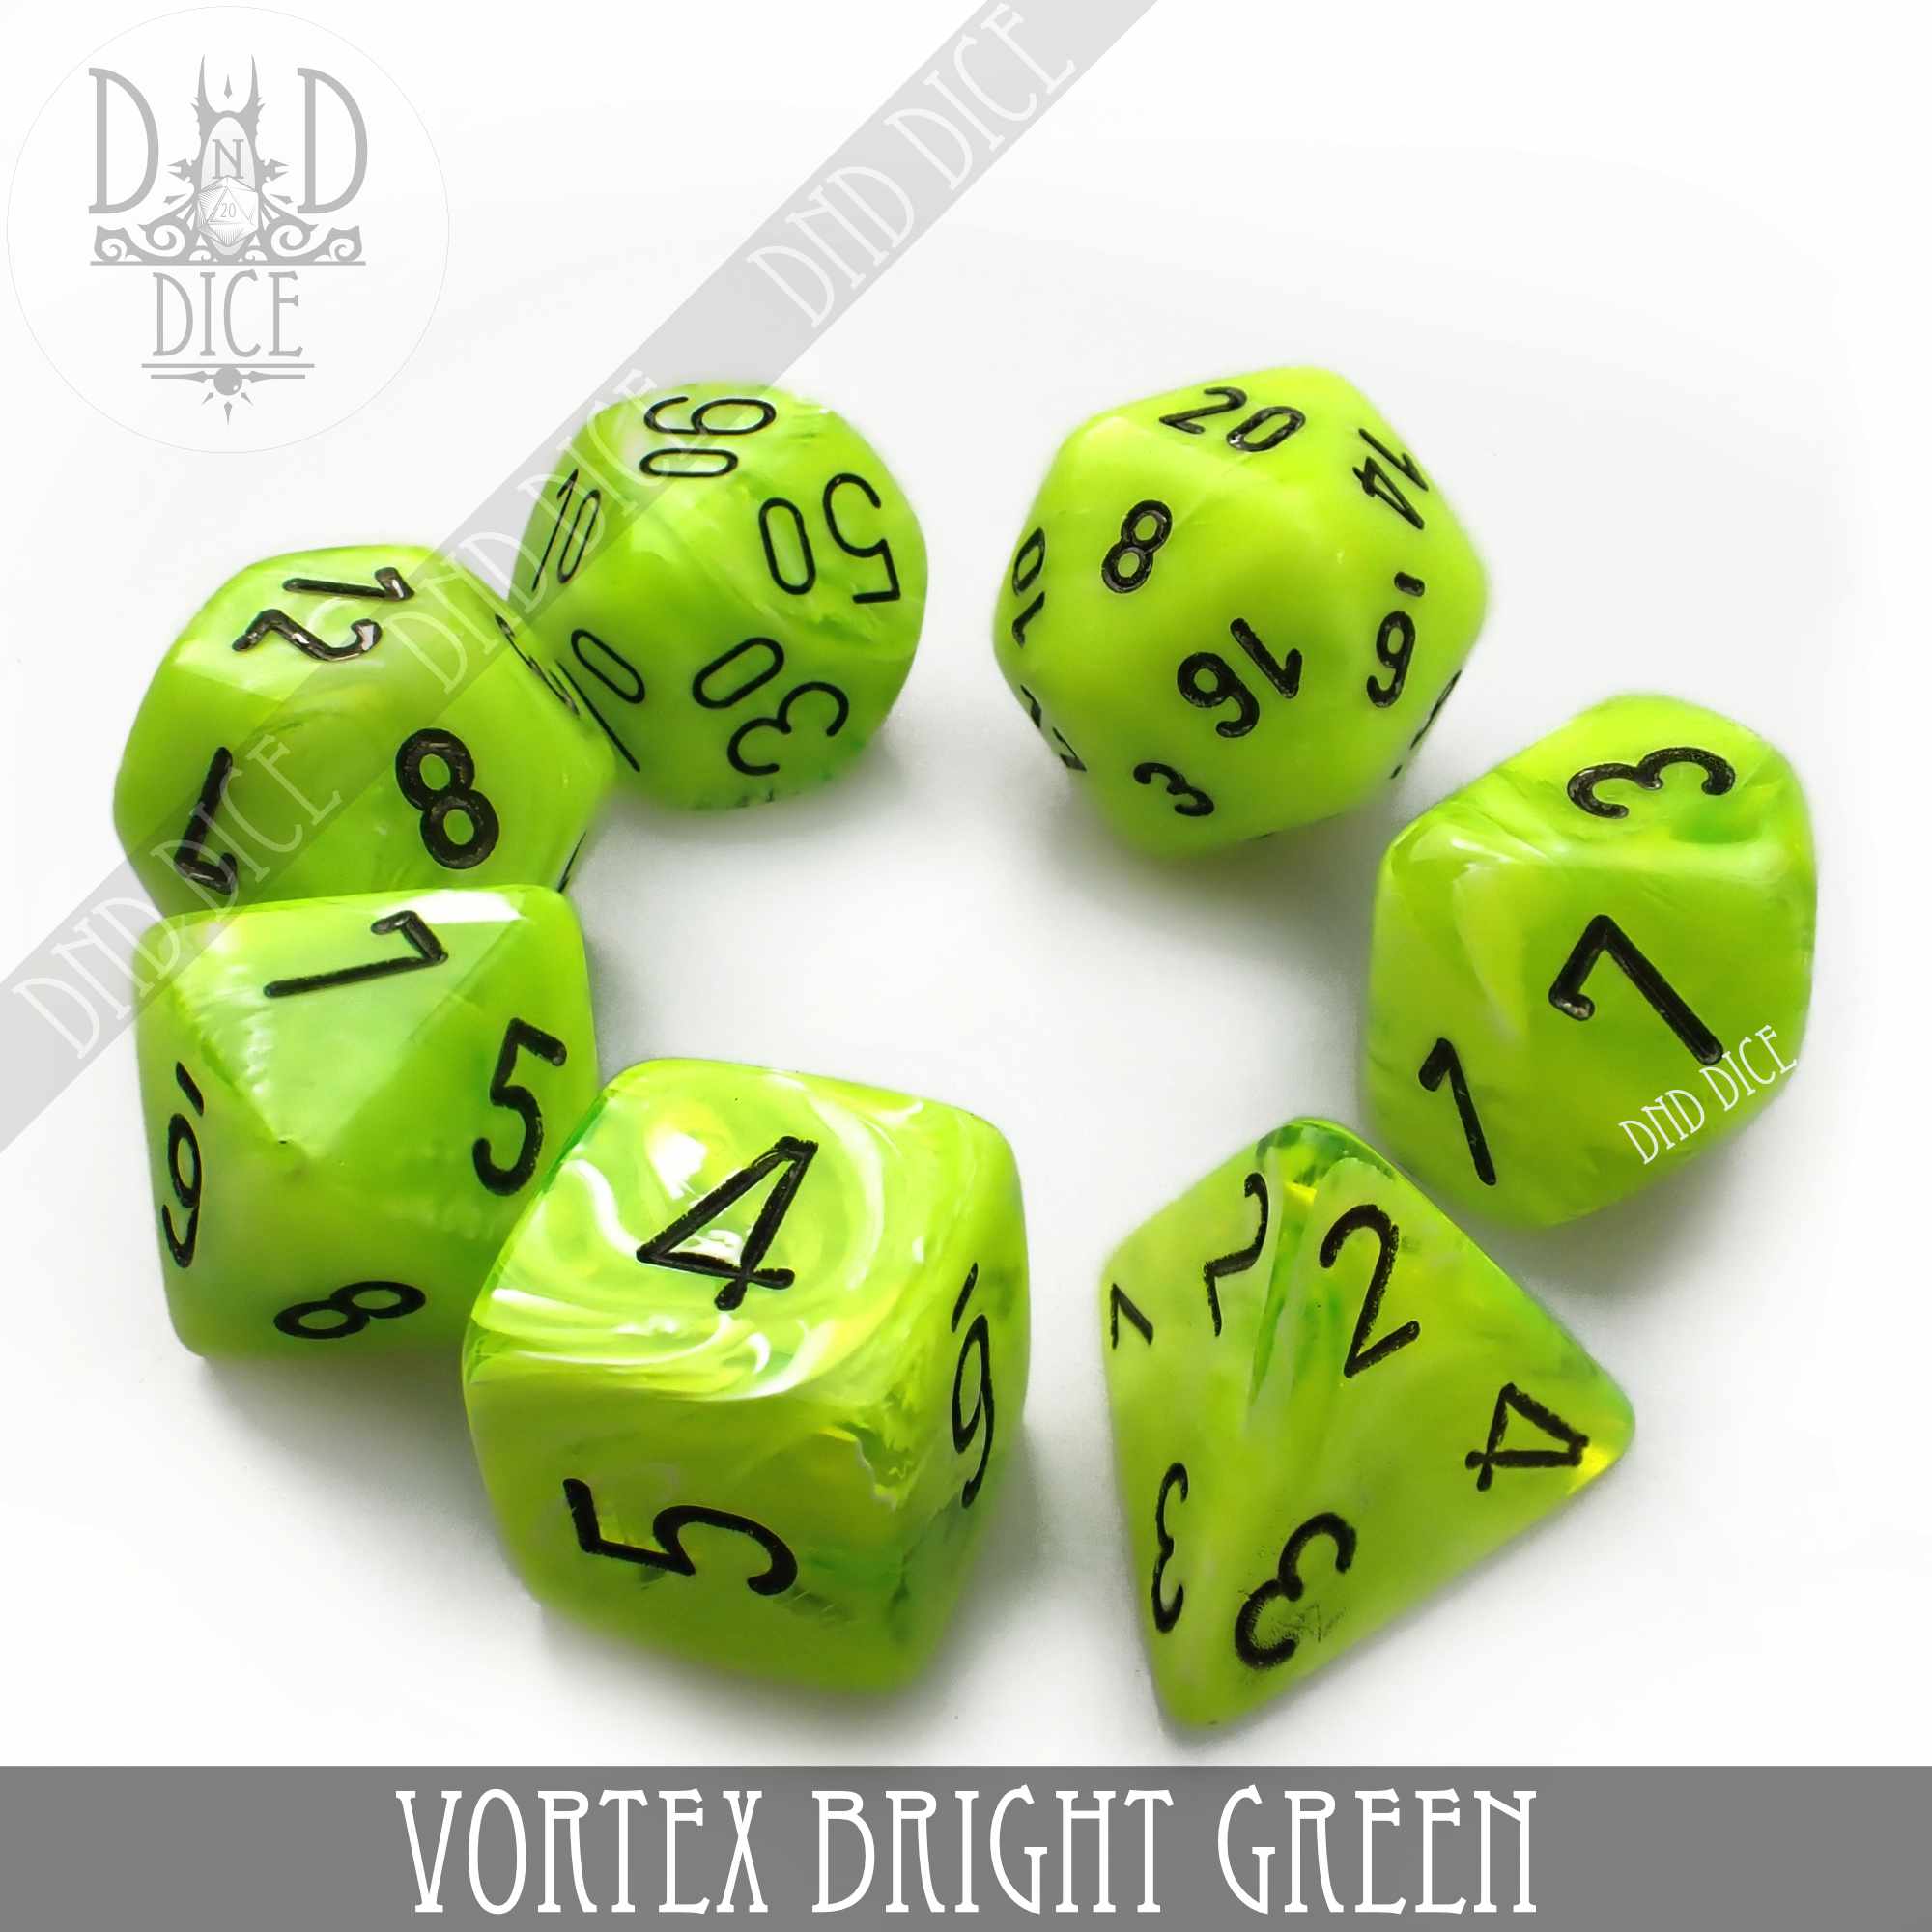 Vortex Bright Green Build Your Own Set